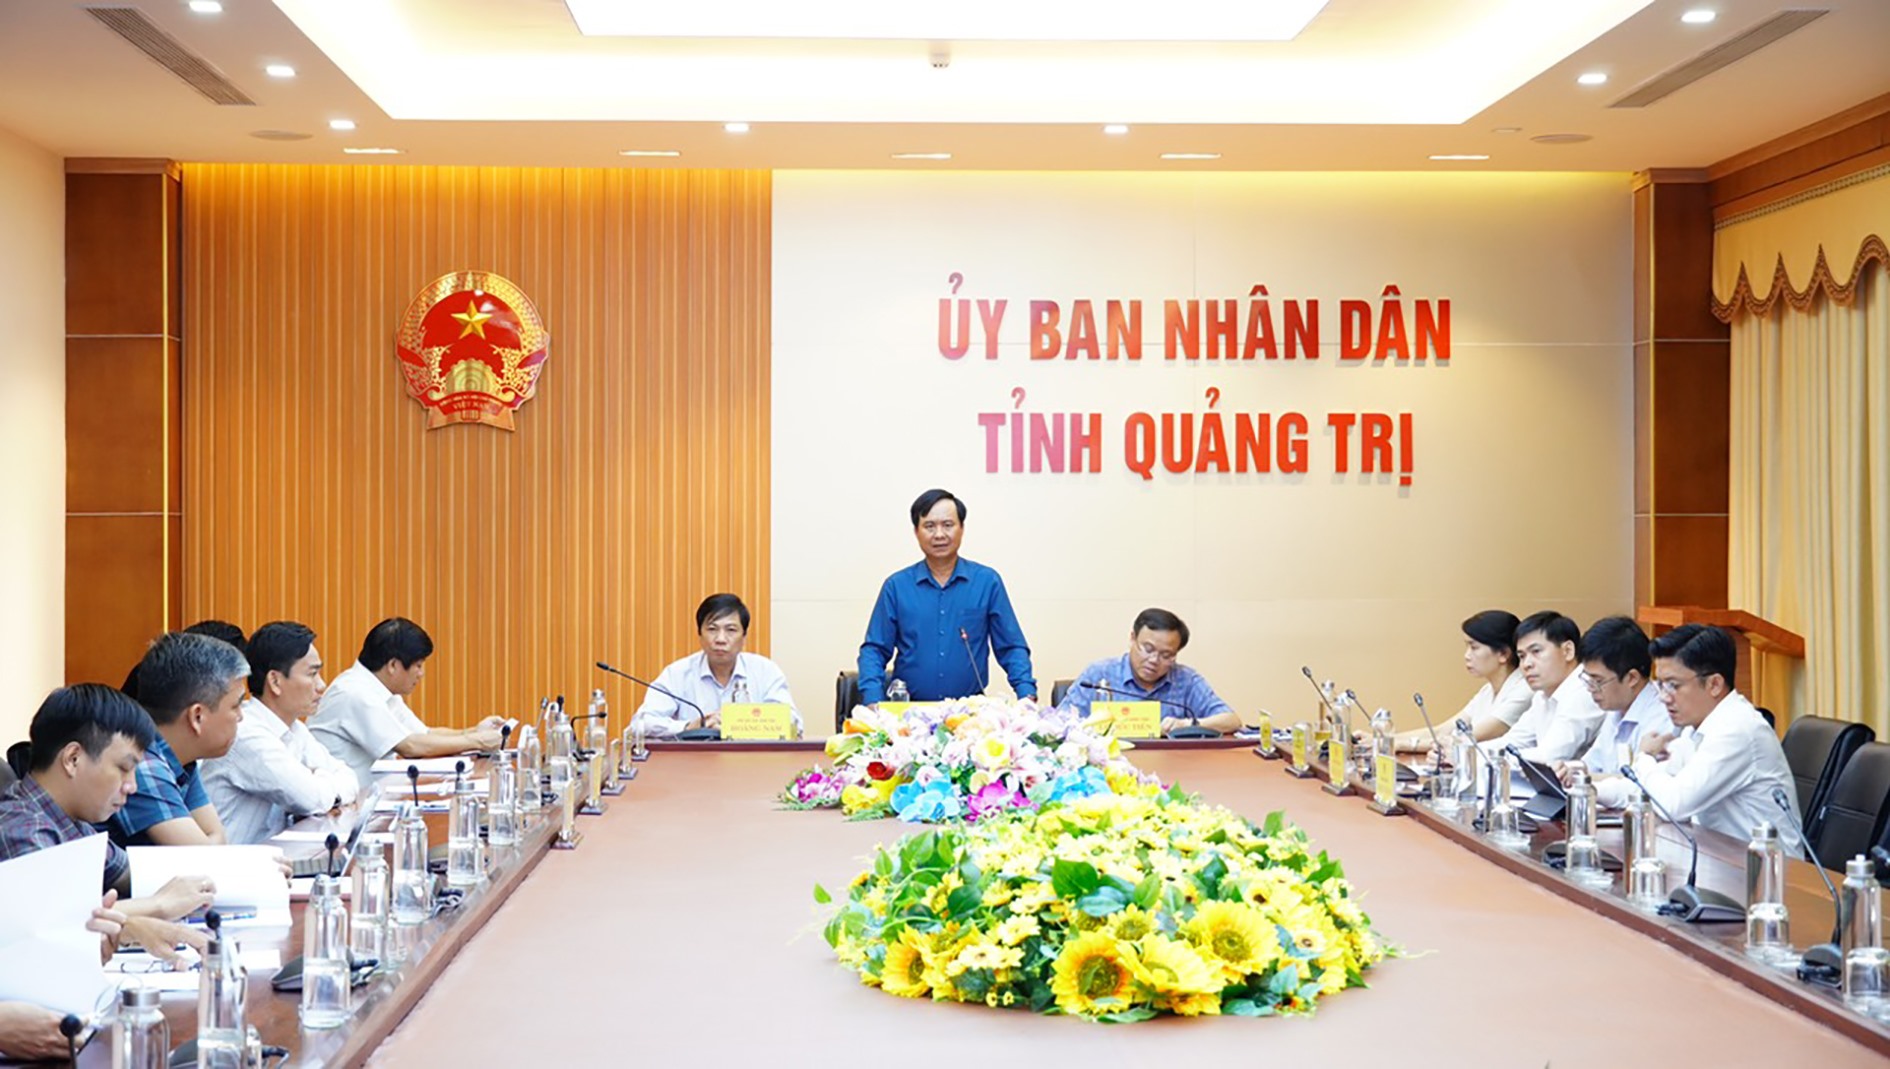 Chủ tịch UBND tỉnh Võ Văn Hưng khẳng định việc sắp sếp lại các cơ quan, đơn vị là một nhiệm vụ quan trọng trong giai đoạn hiện nay- Ảnh: L.N